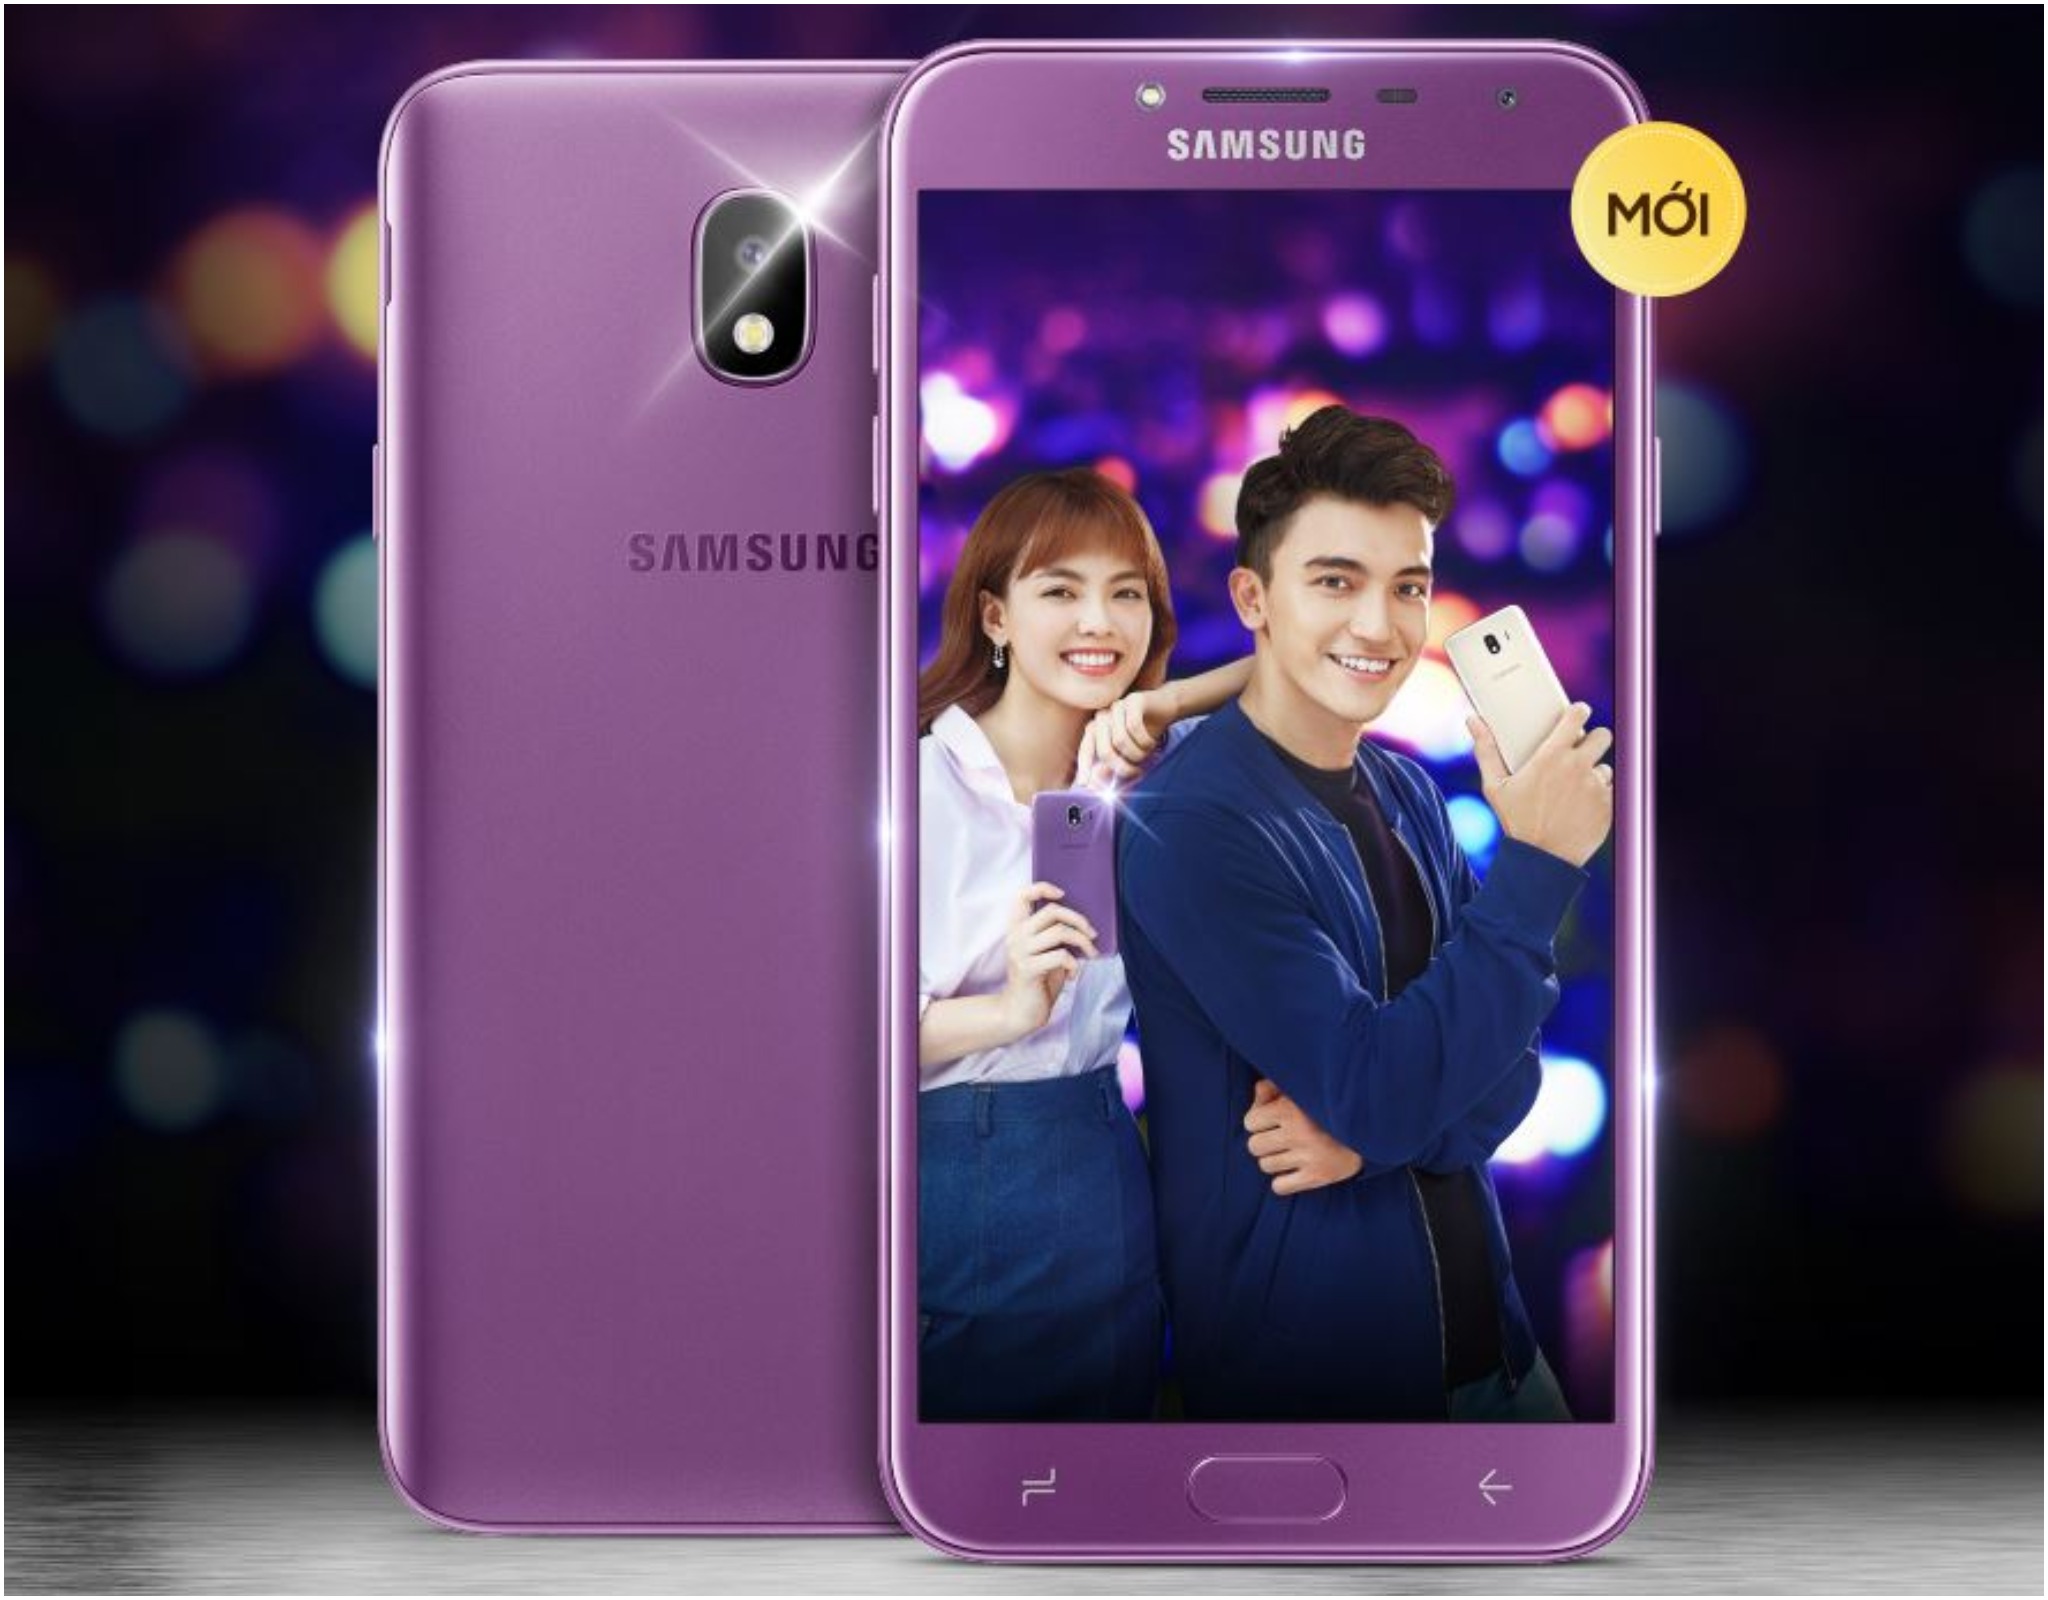 Samsung giới thiệu Galaxy J4 tại Việt Nam với màn hình 5.5 inch, camera chụp tối hiệu quả